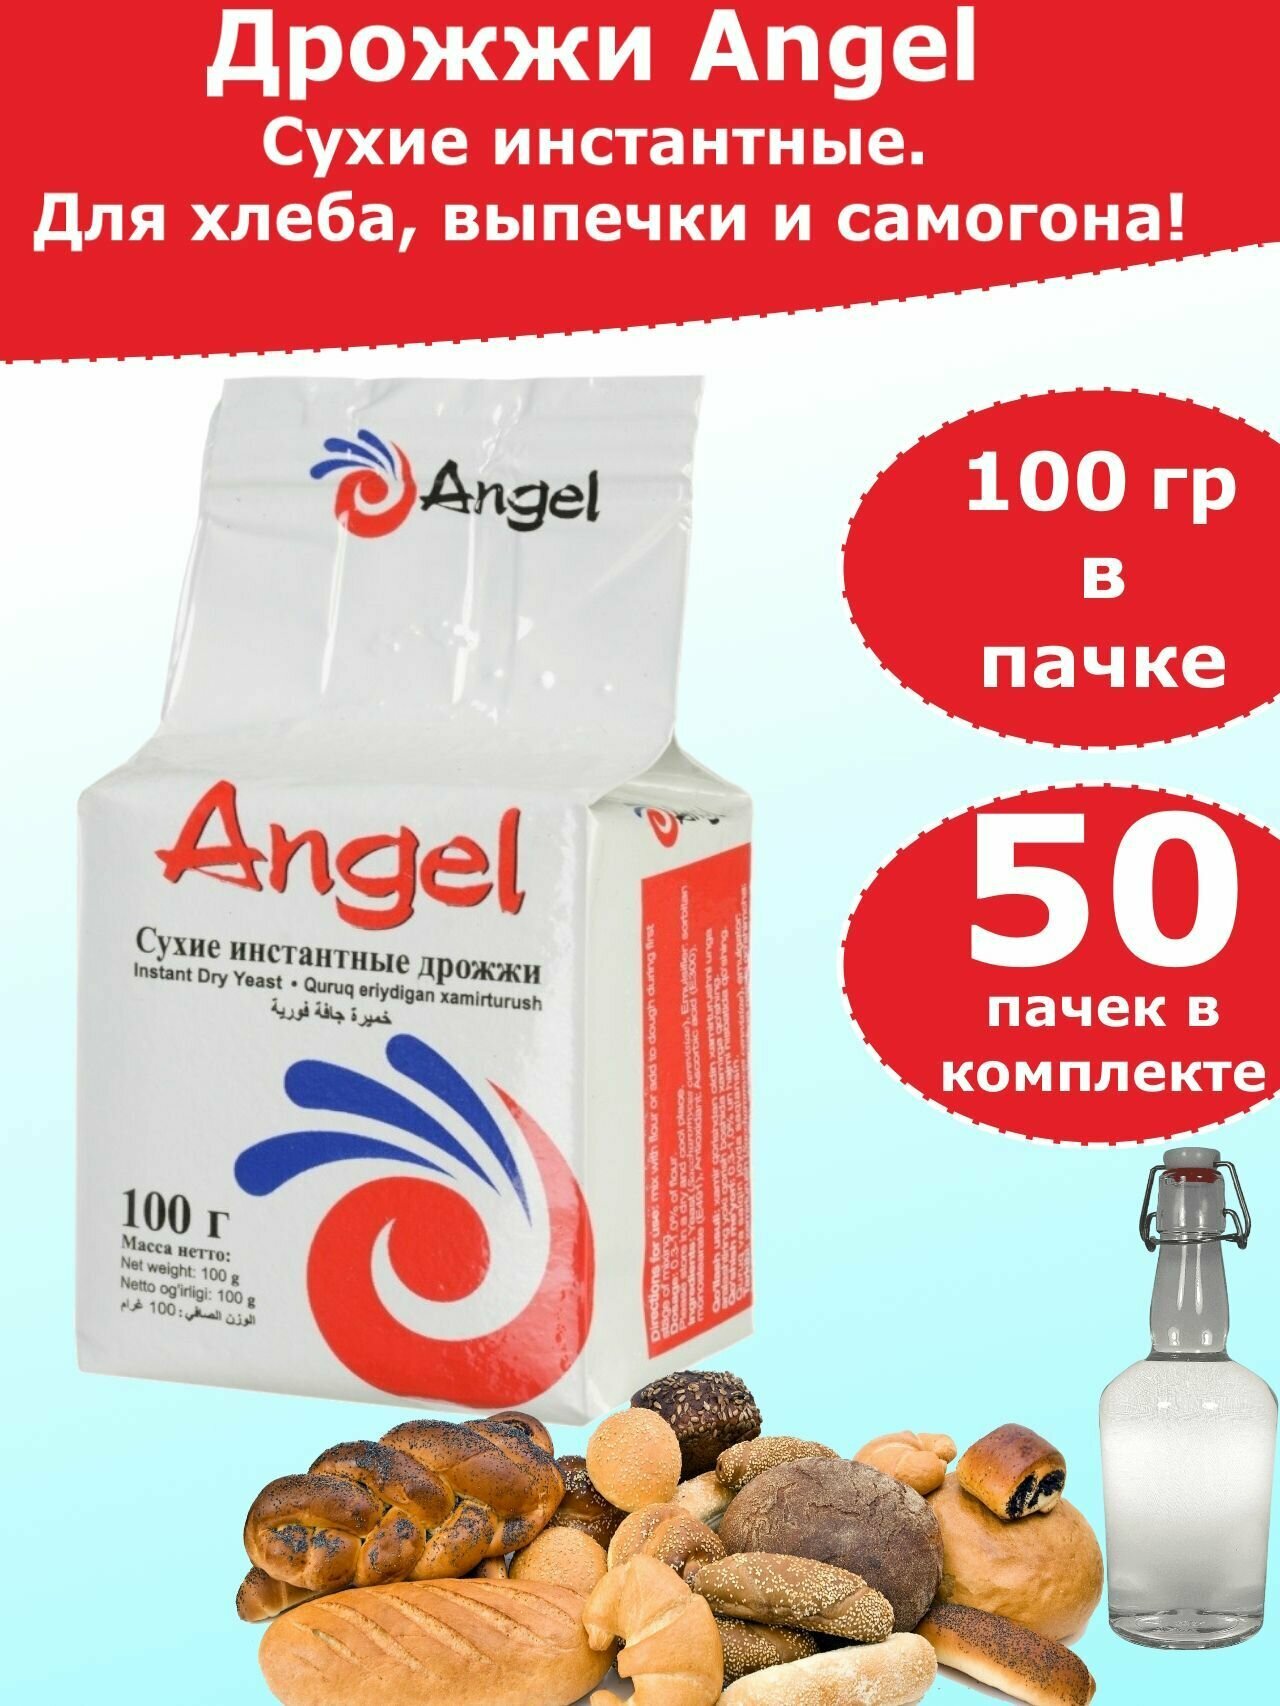 Дрожжи Ангел для хлебопечения и для самогона, 100 гр (комплект из 50 пачек)